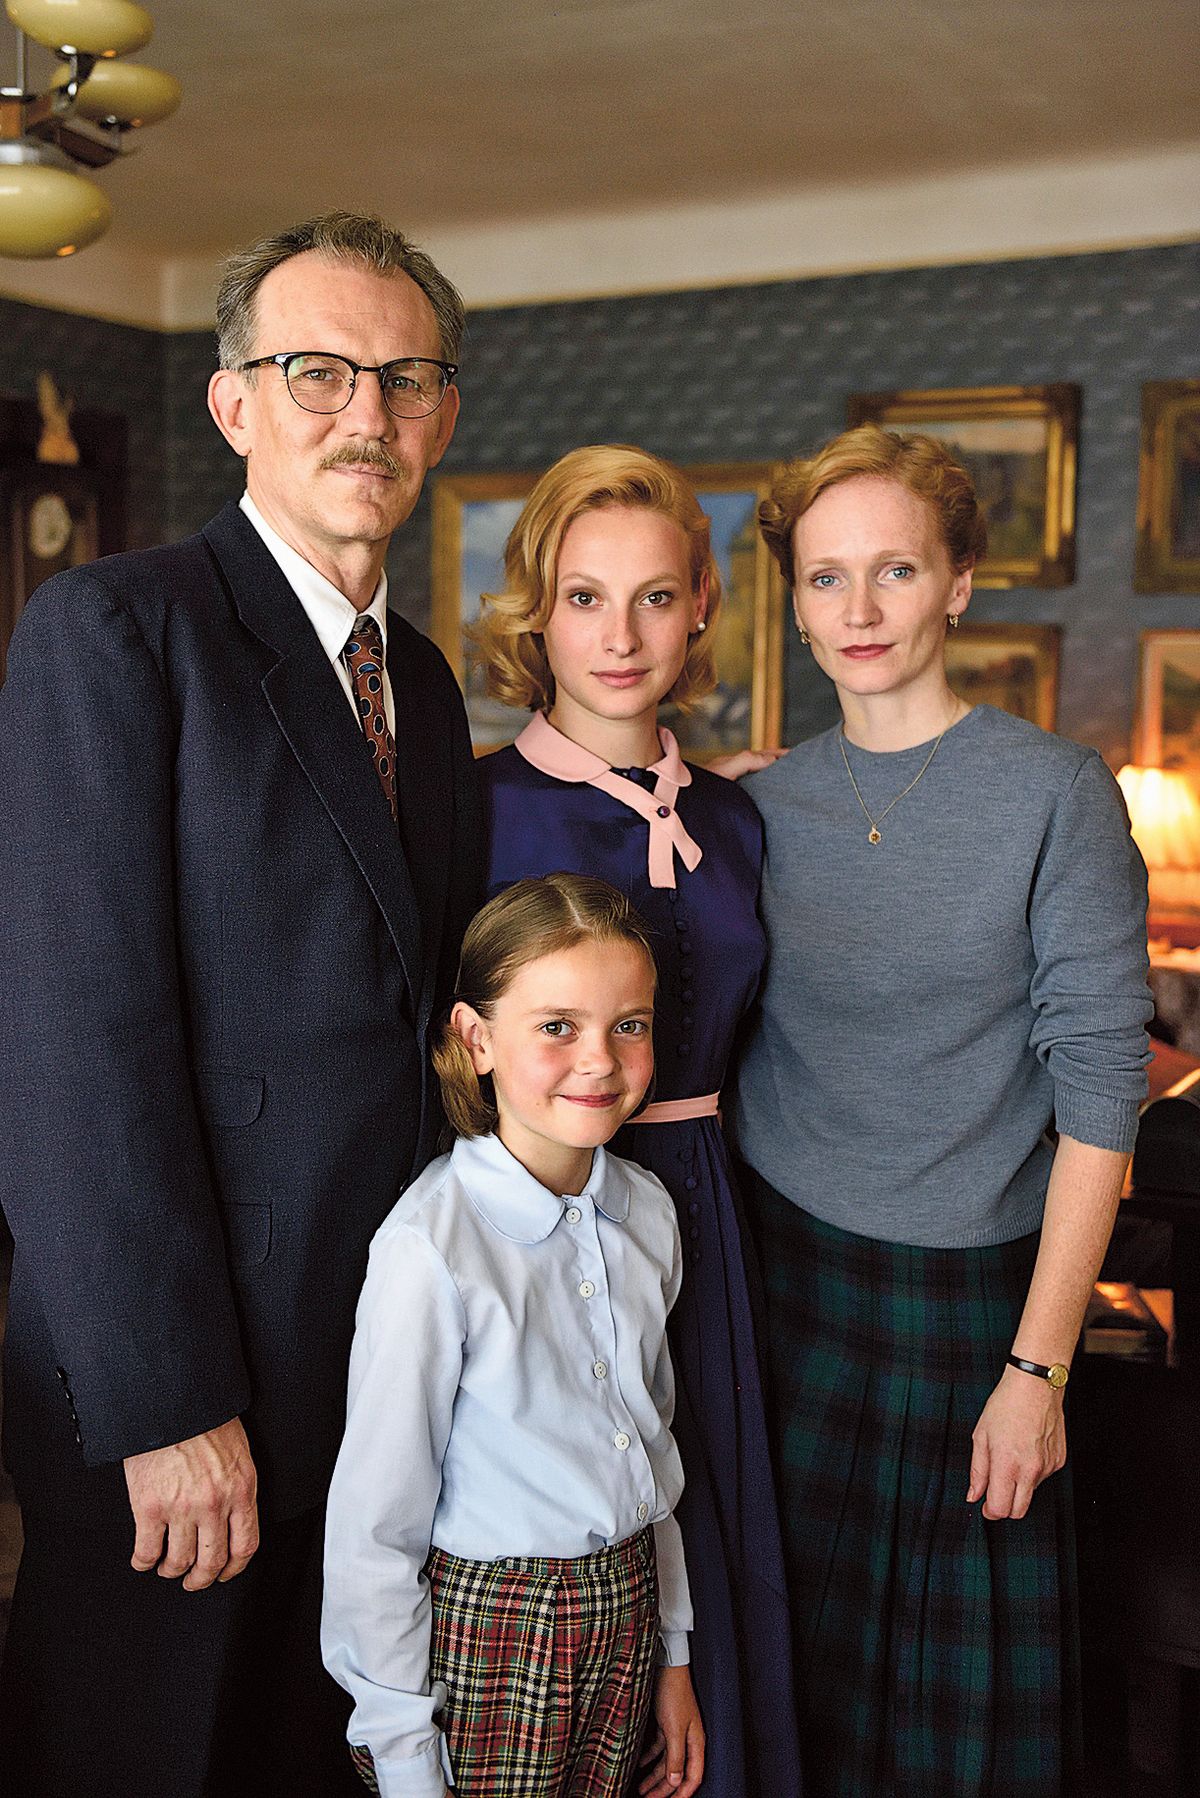 S filmovou rodinou z trilogie Zahradnictví. Manželkou mu byla Aňa Geislerová, dcery hrály Anna Fialová a Tereza Hladíková.